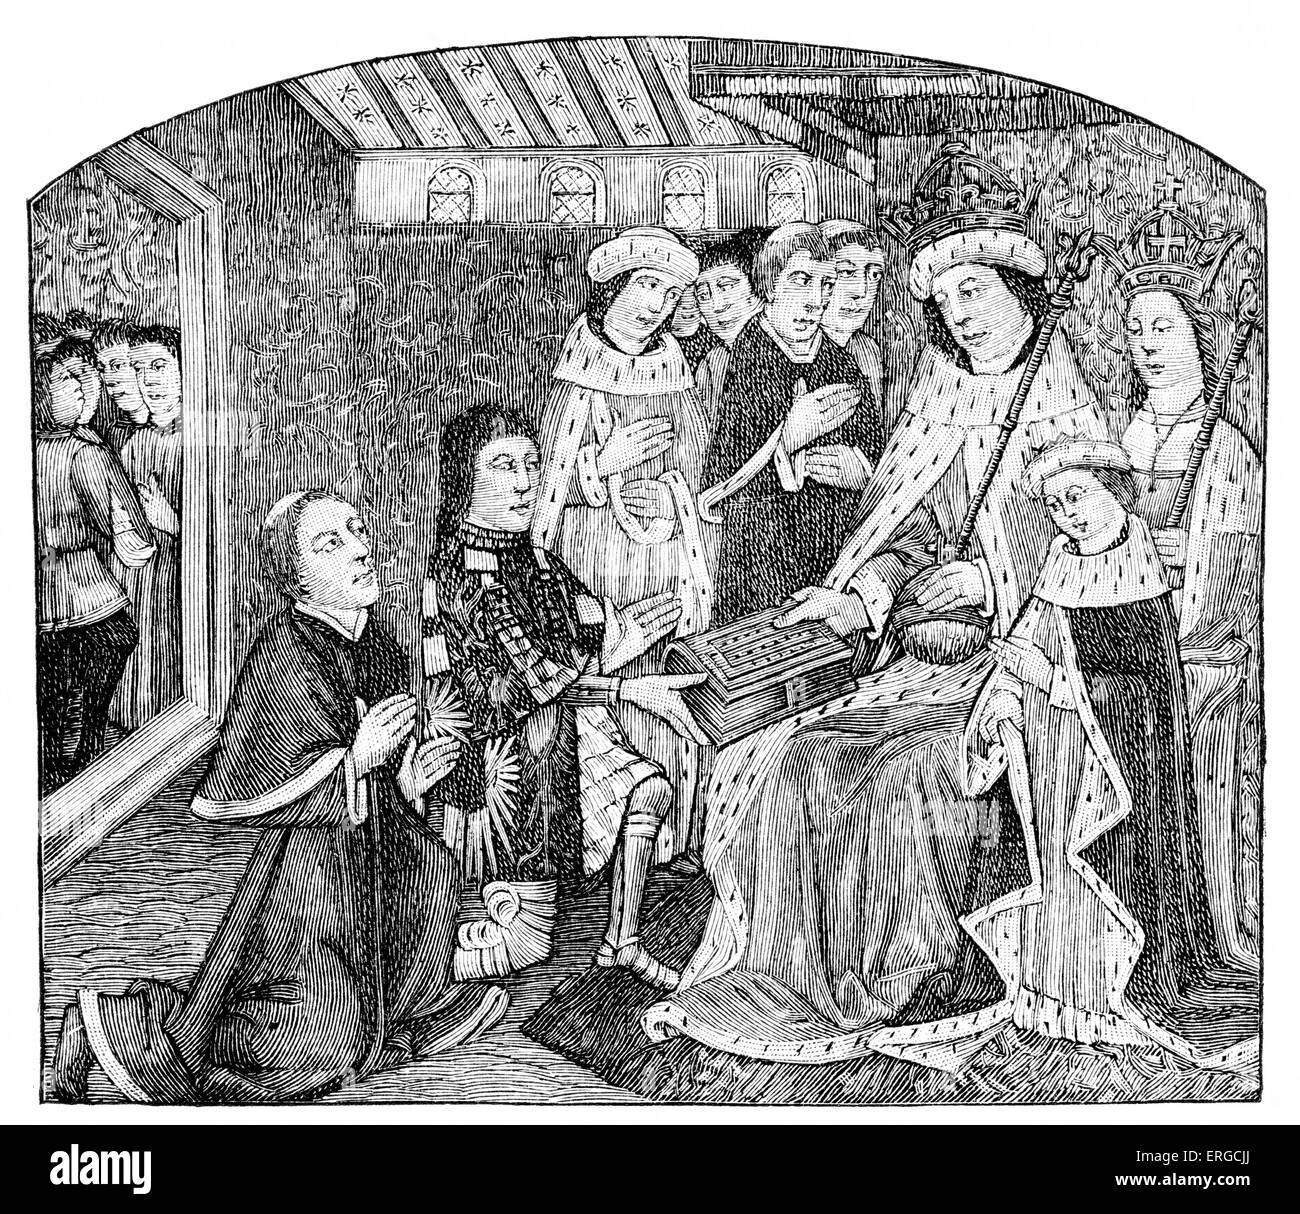 Anthony Woodville présentant Caxton à Edward IV - de la gravure du manuscrit médiéval. Le Caxton premier manuscrit a été imprimé une traduction anglaise par Woodville de Jean de l'Teonville version française d'un travail d'Amérique latine. Le livre a été publié en 1477, intitulé "Sayengis t.i.c.e. et des philosophes". Caxton, considérée comme la première personne anglais au travail qu'une imprimante et le premier à introduire l'imprimerie en Angleterre.ch. 1415/1422 - ch. Mars 1492. AW : 2e comte Rivers, homme d'État et patron littéraire, ch. 1442 - 1483. Banque D'Images